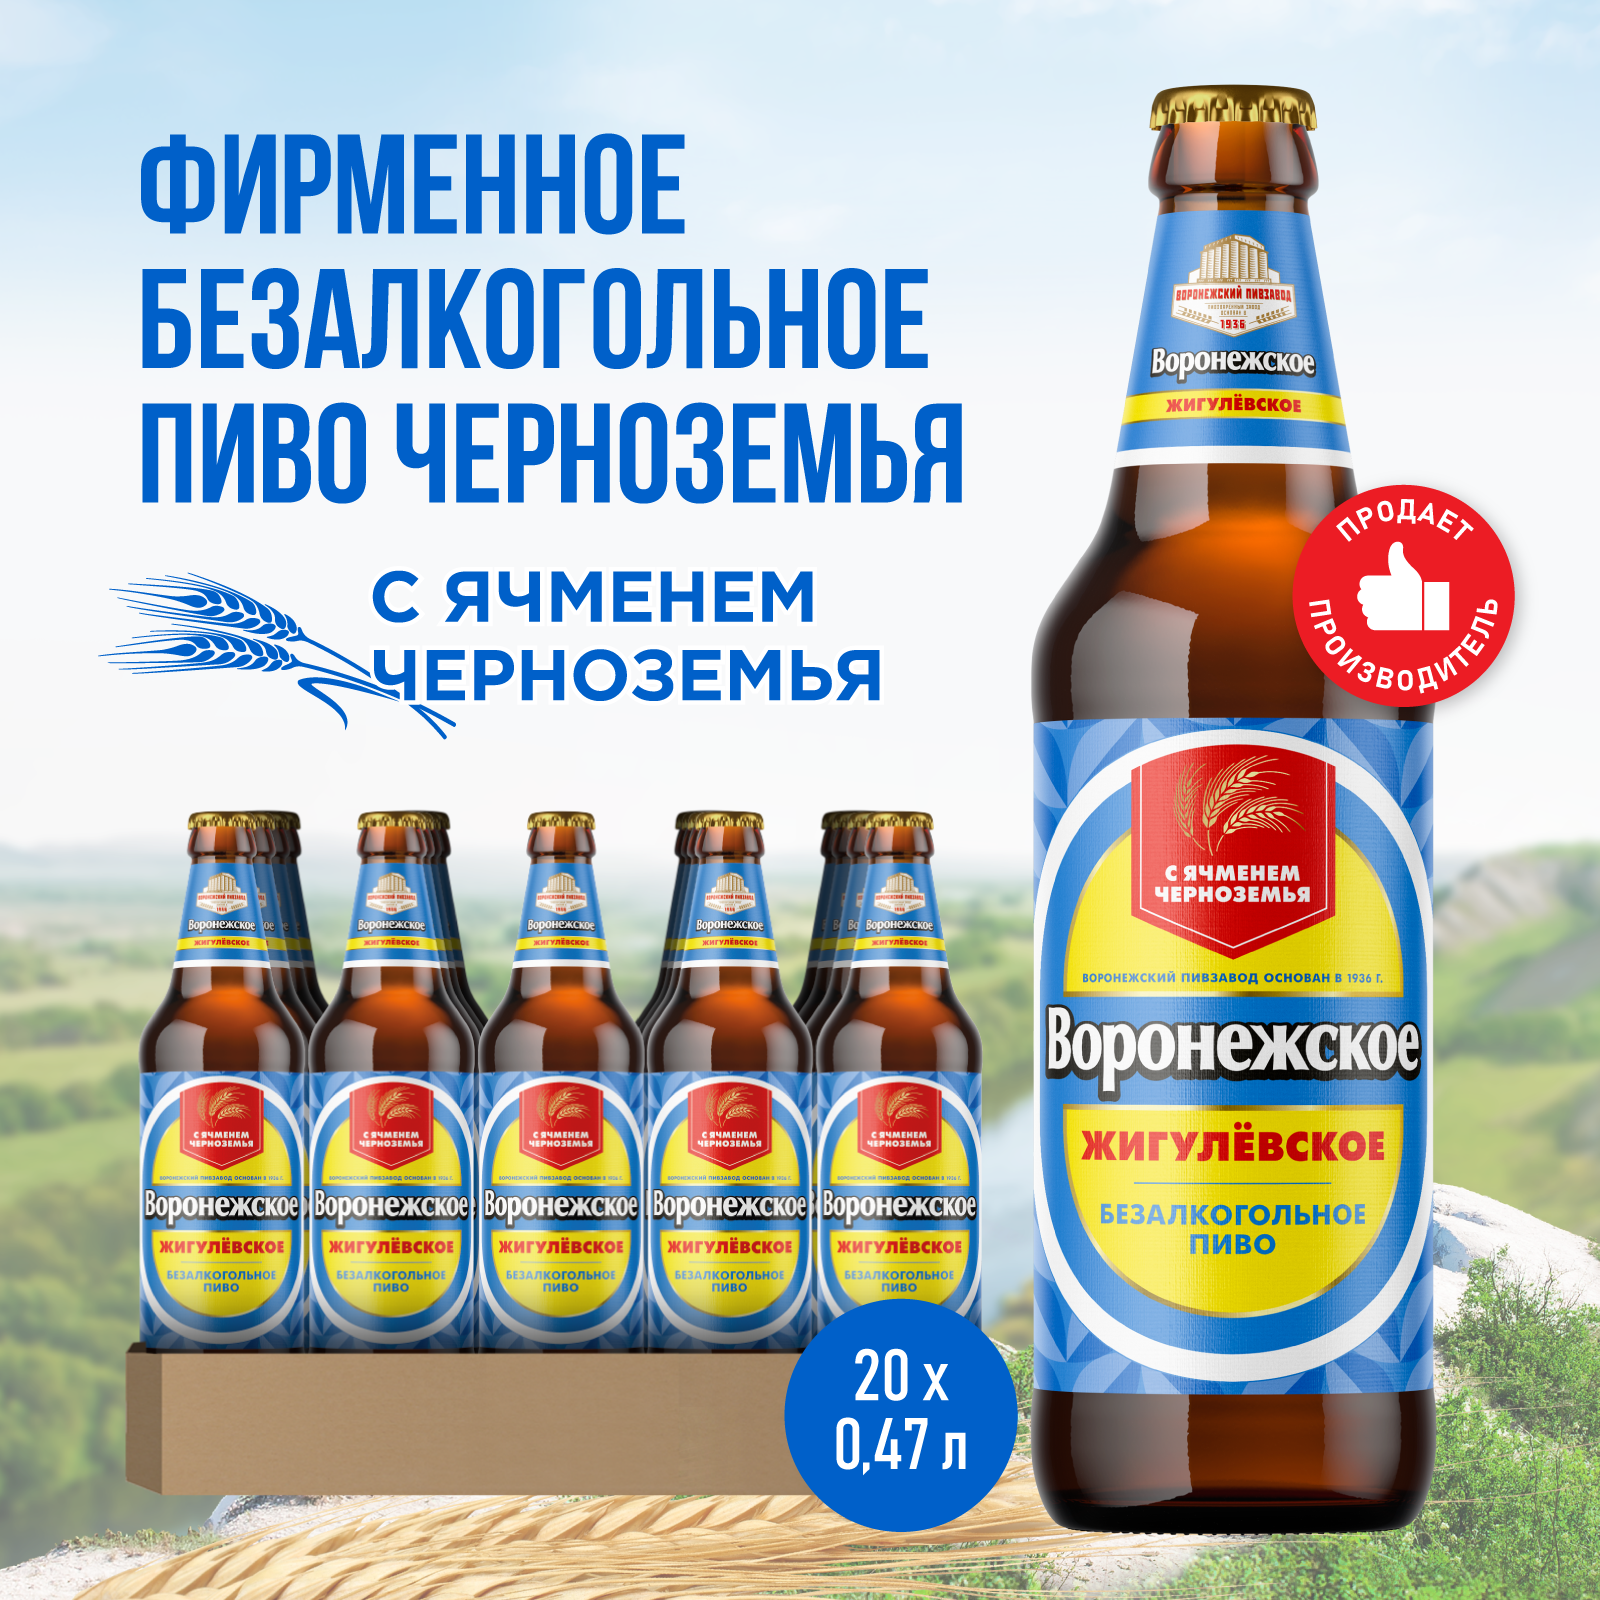 Пиво Воронежское Жигулевское Безалкогольное Светлое, 20 шт. х 0,47 л, бутылка